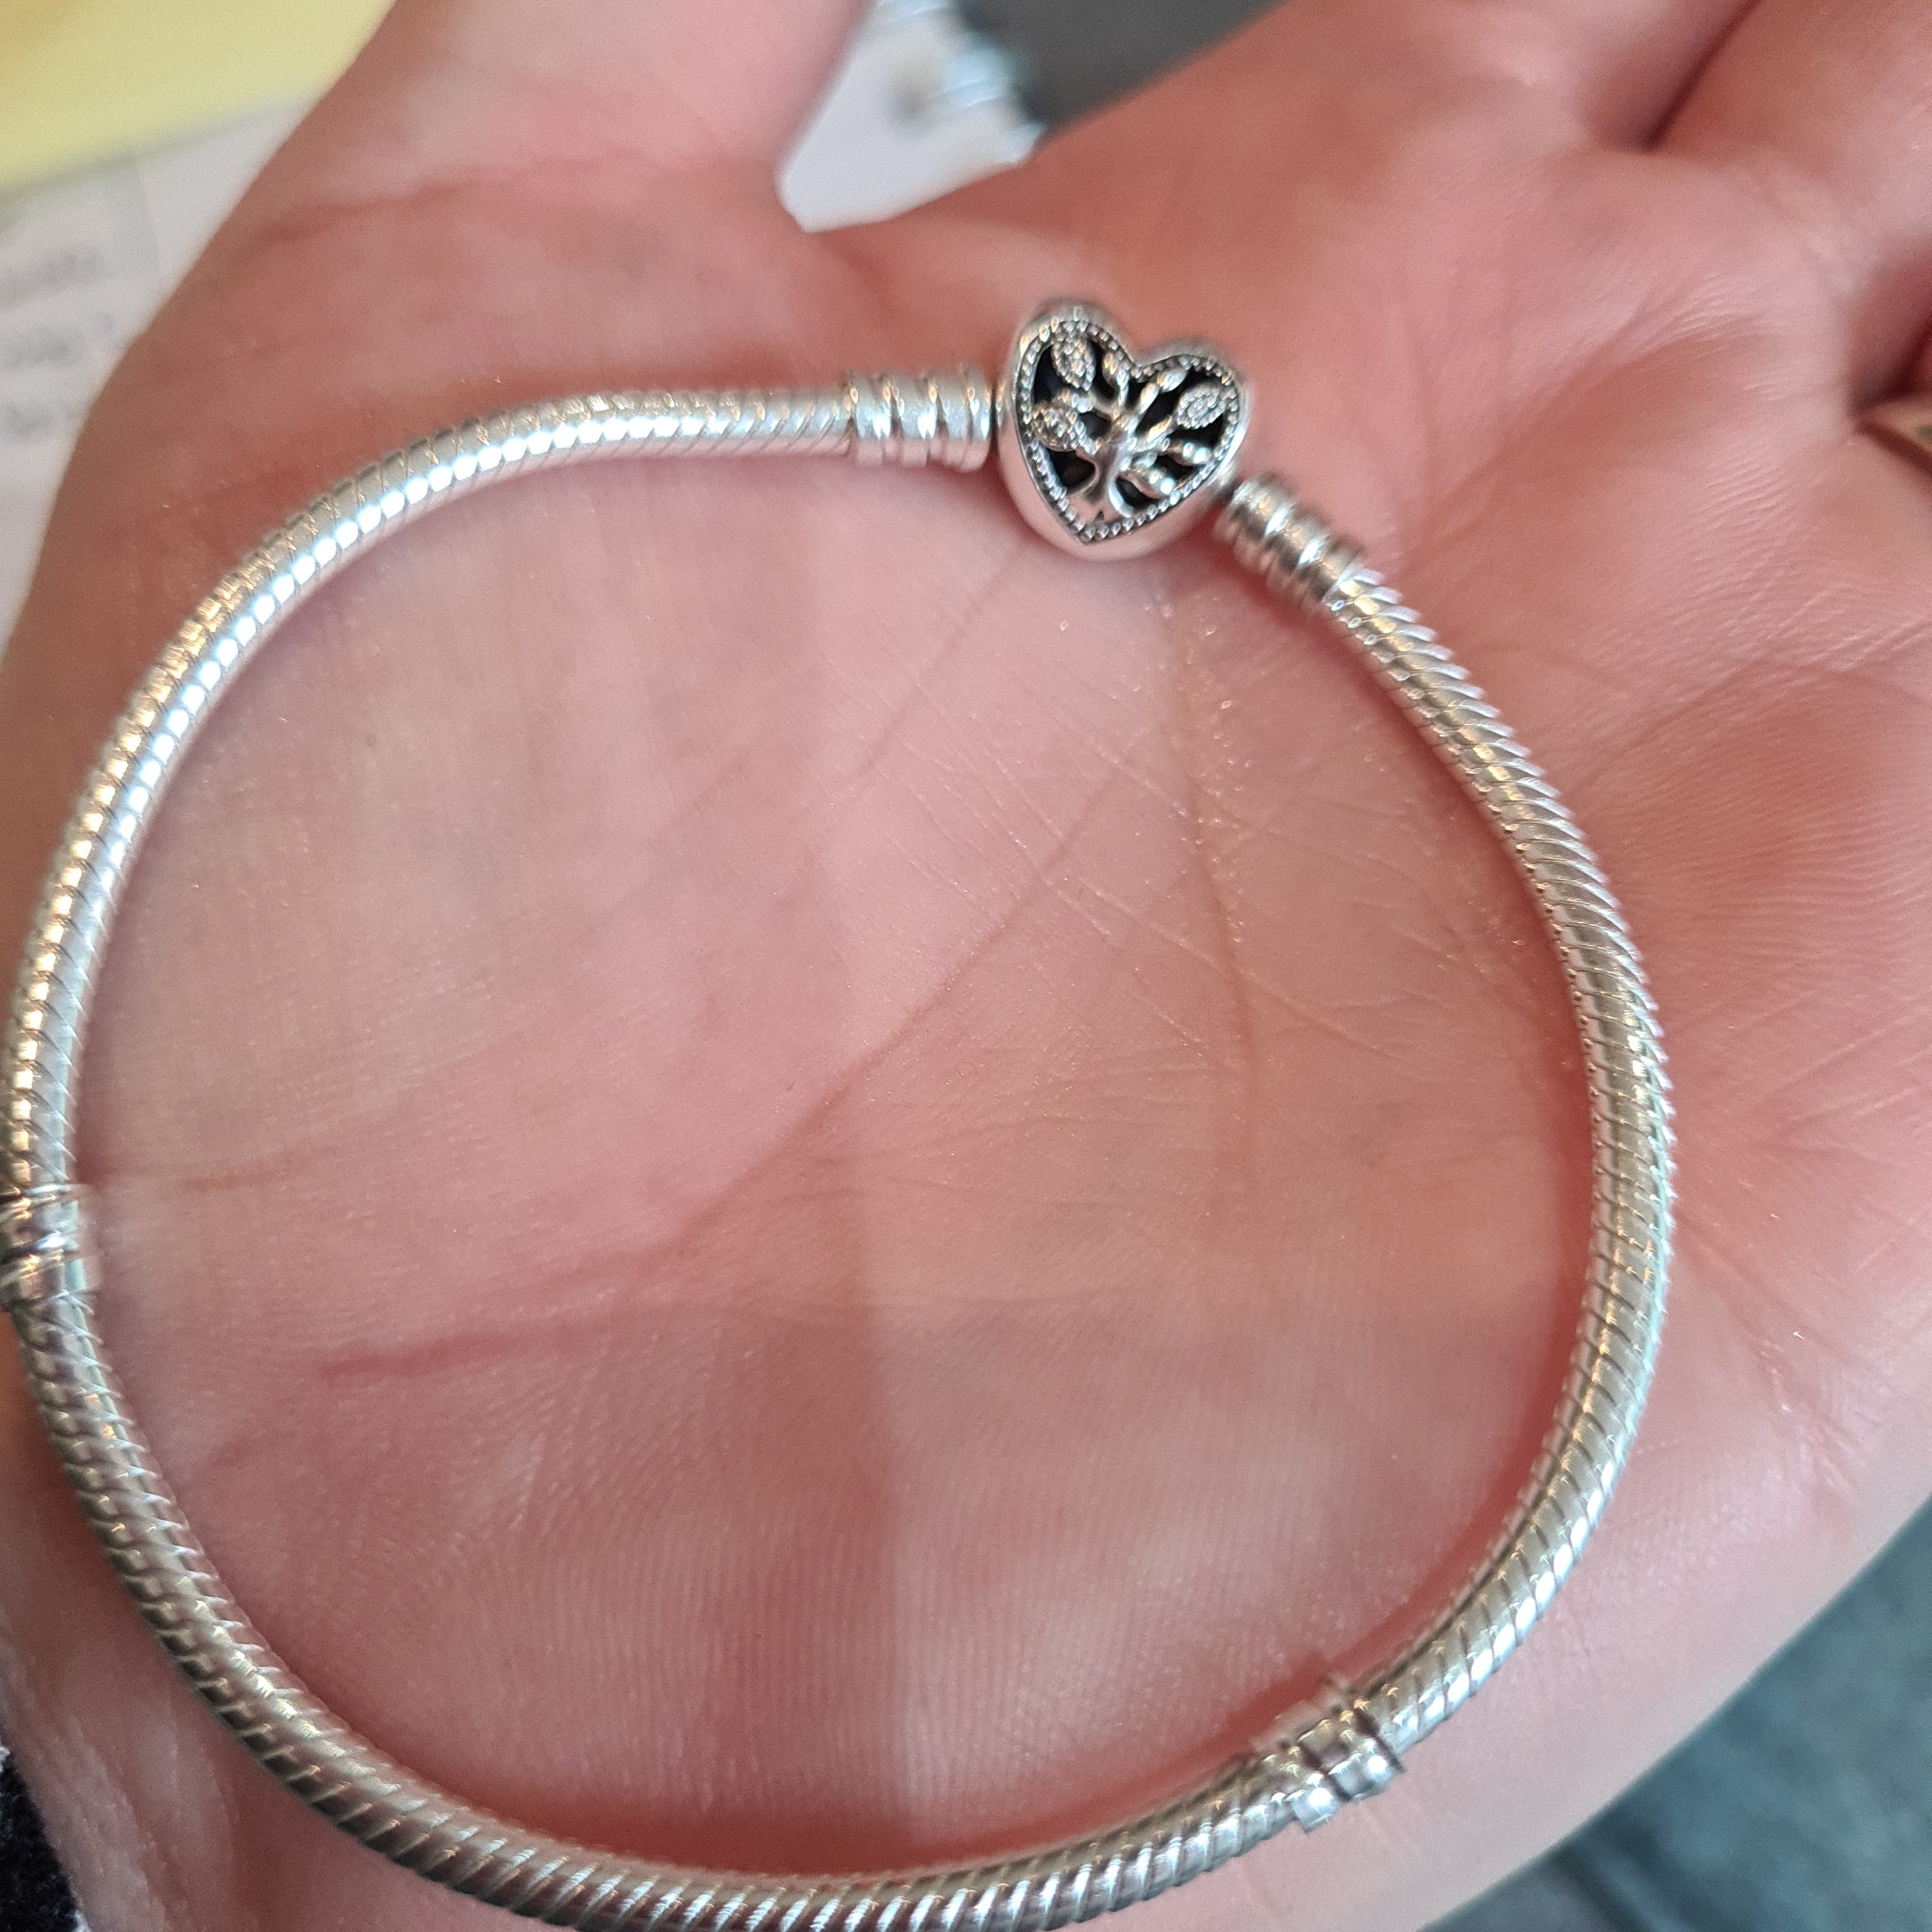 Pandora Moments Family Tree Heart Clasp Snake Chain Bracelet